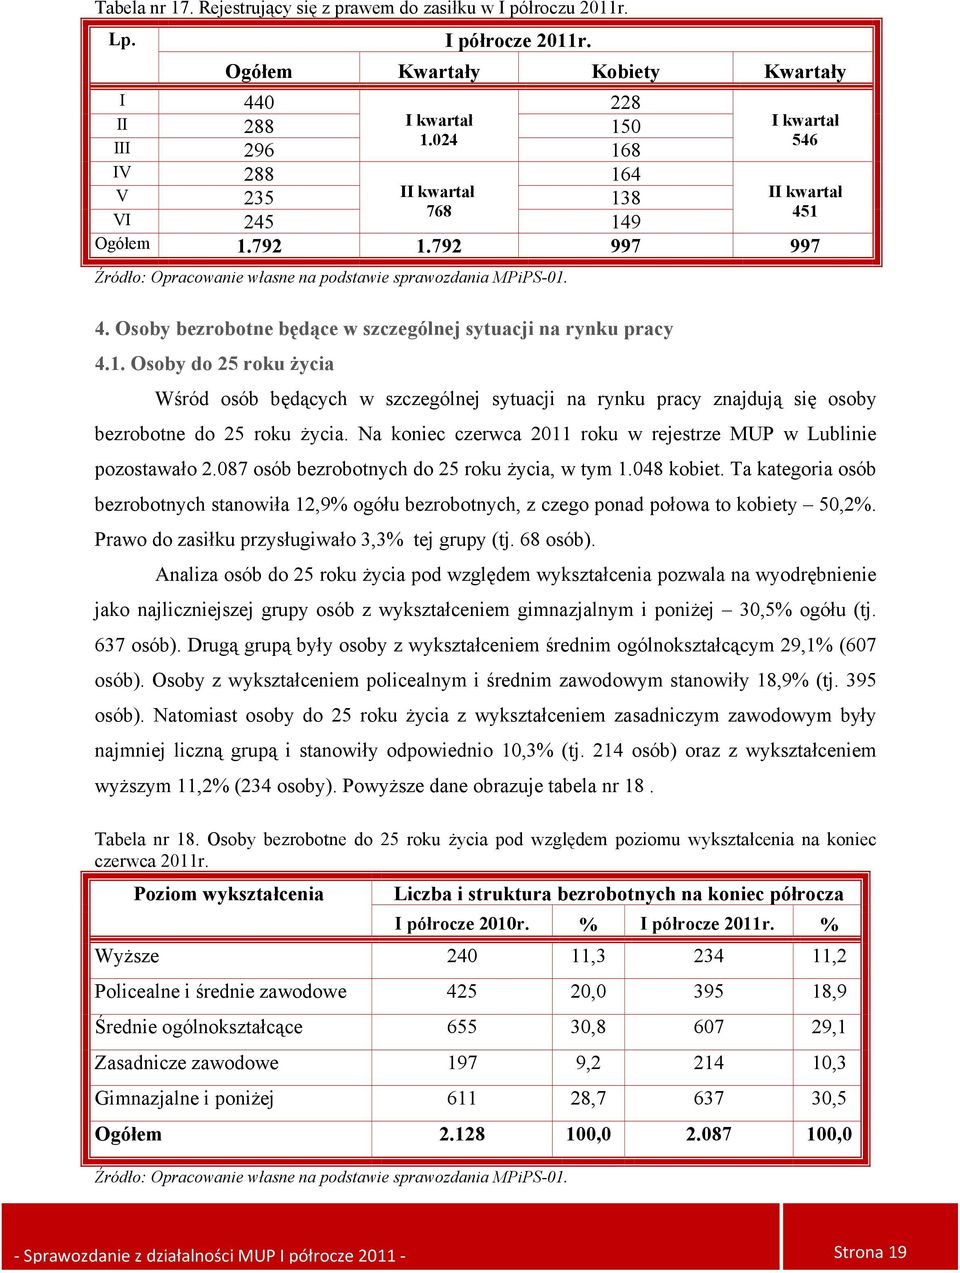 Na koniec czerwca 2011 roku w rejestrze MUP w Lublinie pozostawało 2.087 osób bezrobotnych do 25 roku życia, w tym 1.048 kobiet.